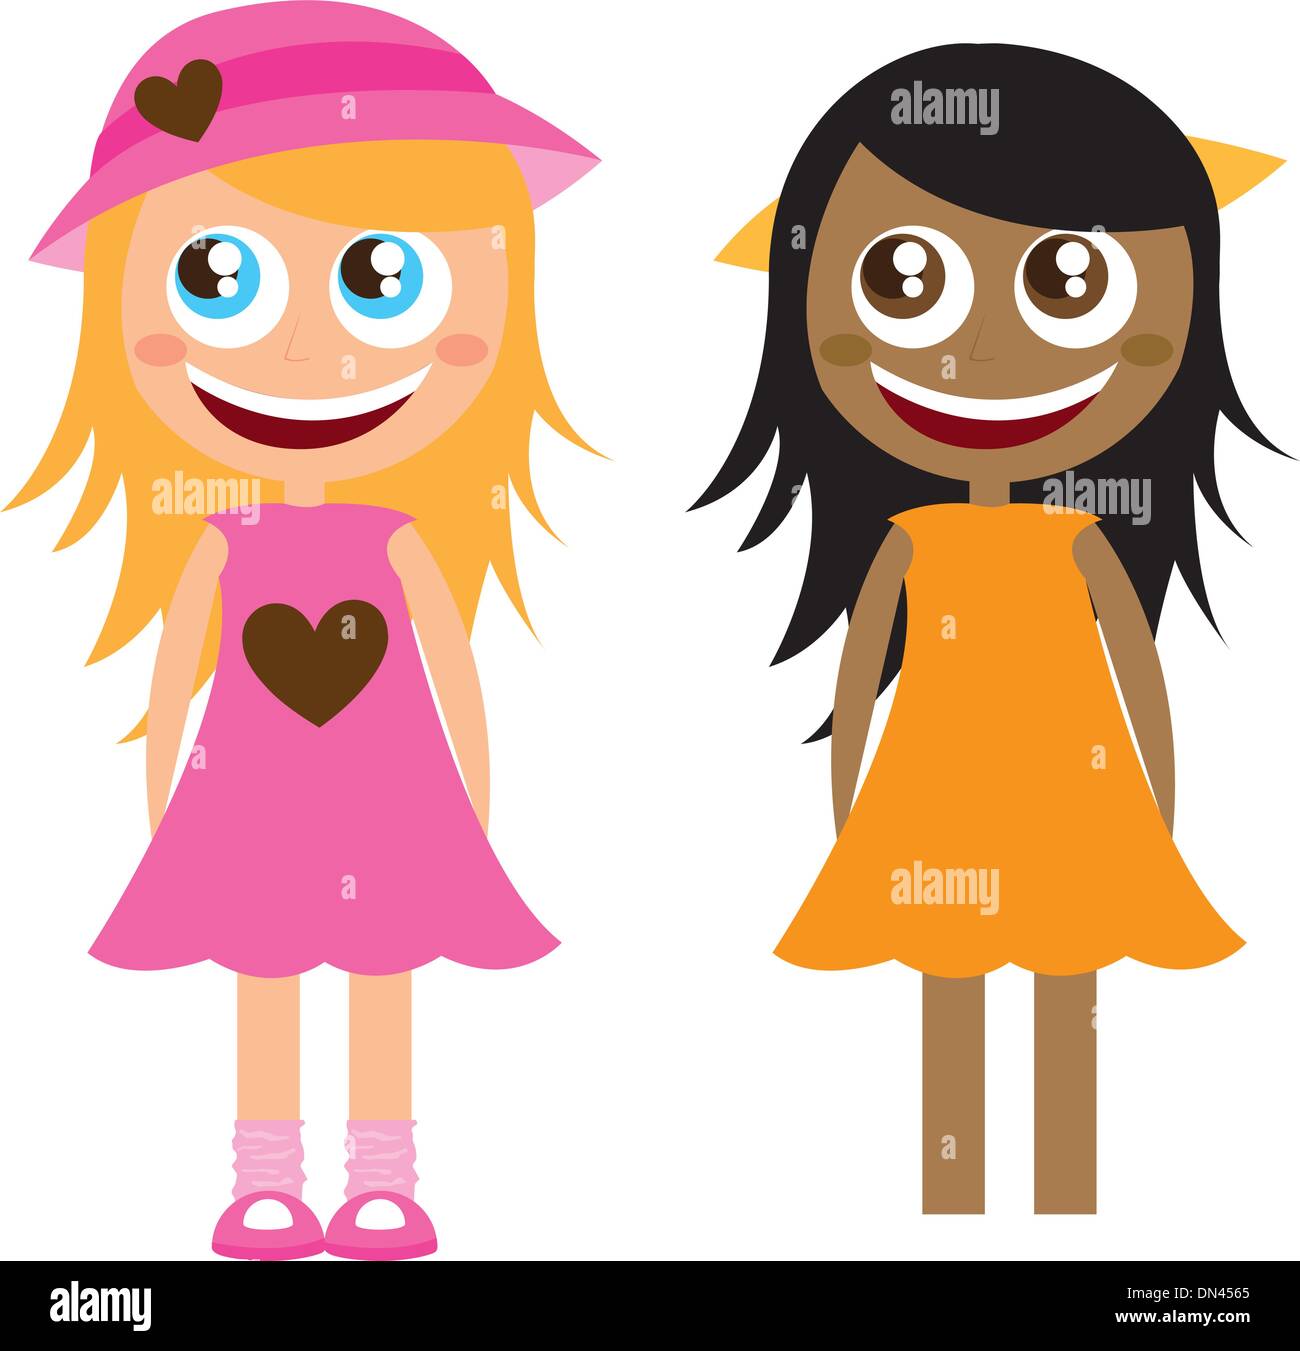 dibujos animados de chicas Imagen Vector de stock - Alamy